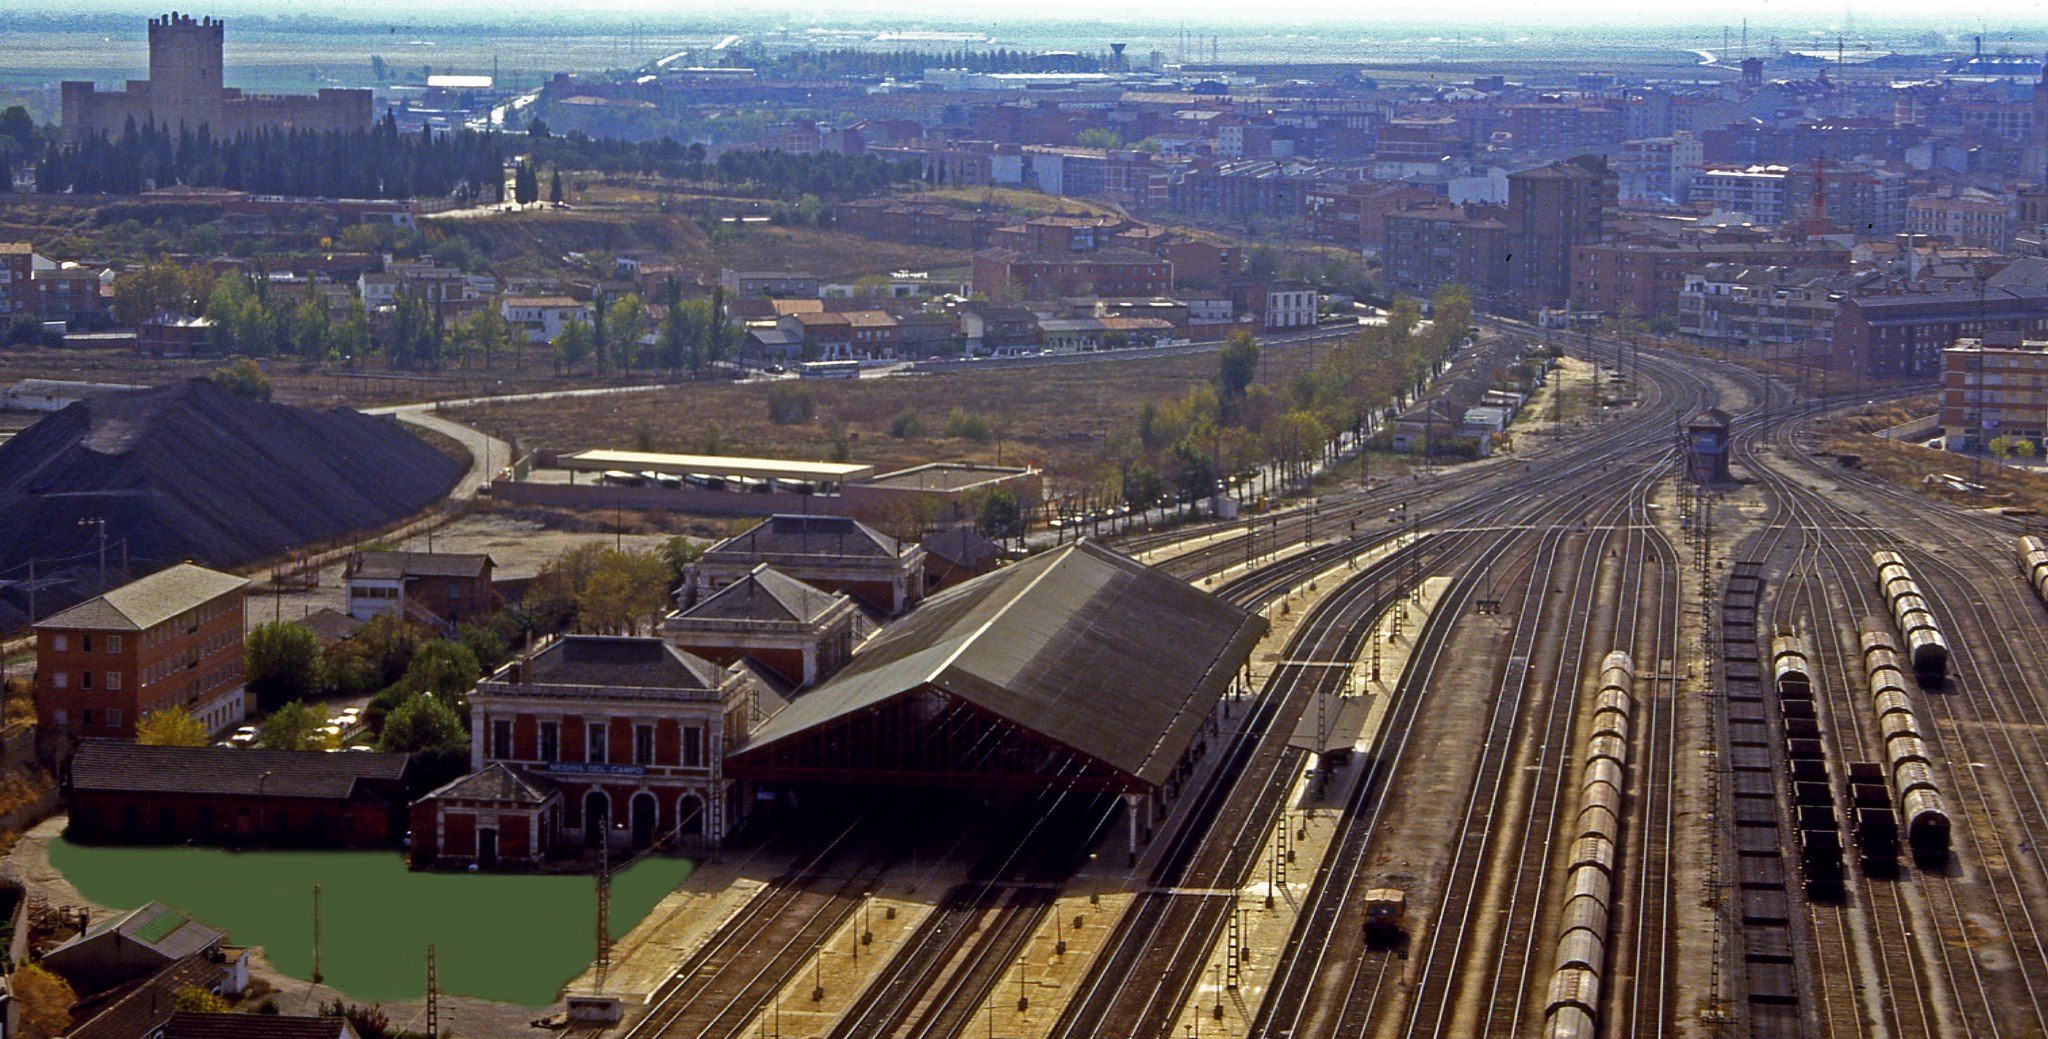 Estación de ferrocarril. Vista panorámica aérea de Medina del Campo. Fotografía cedida por Ángel Fernández